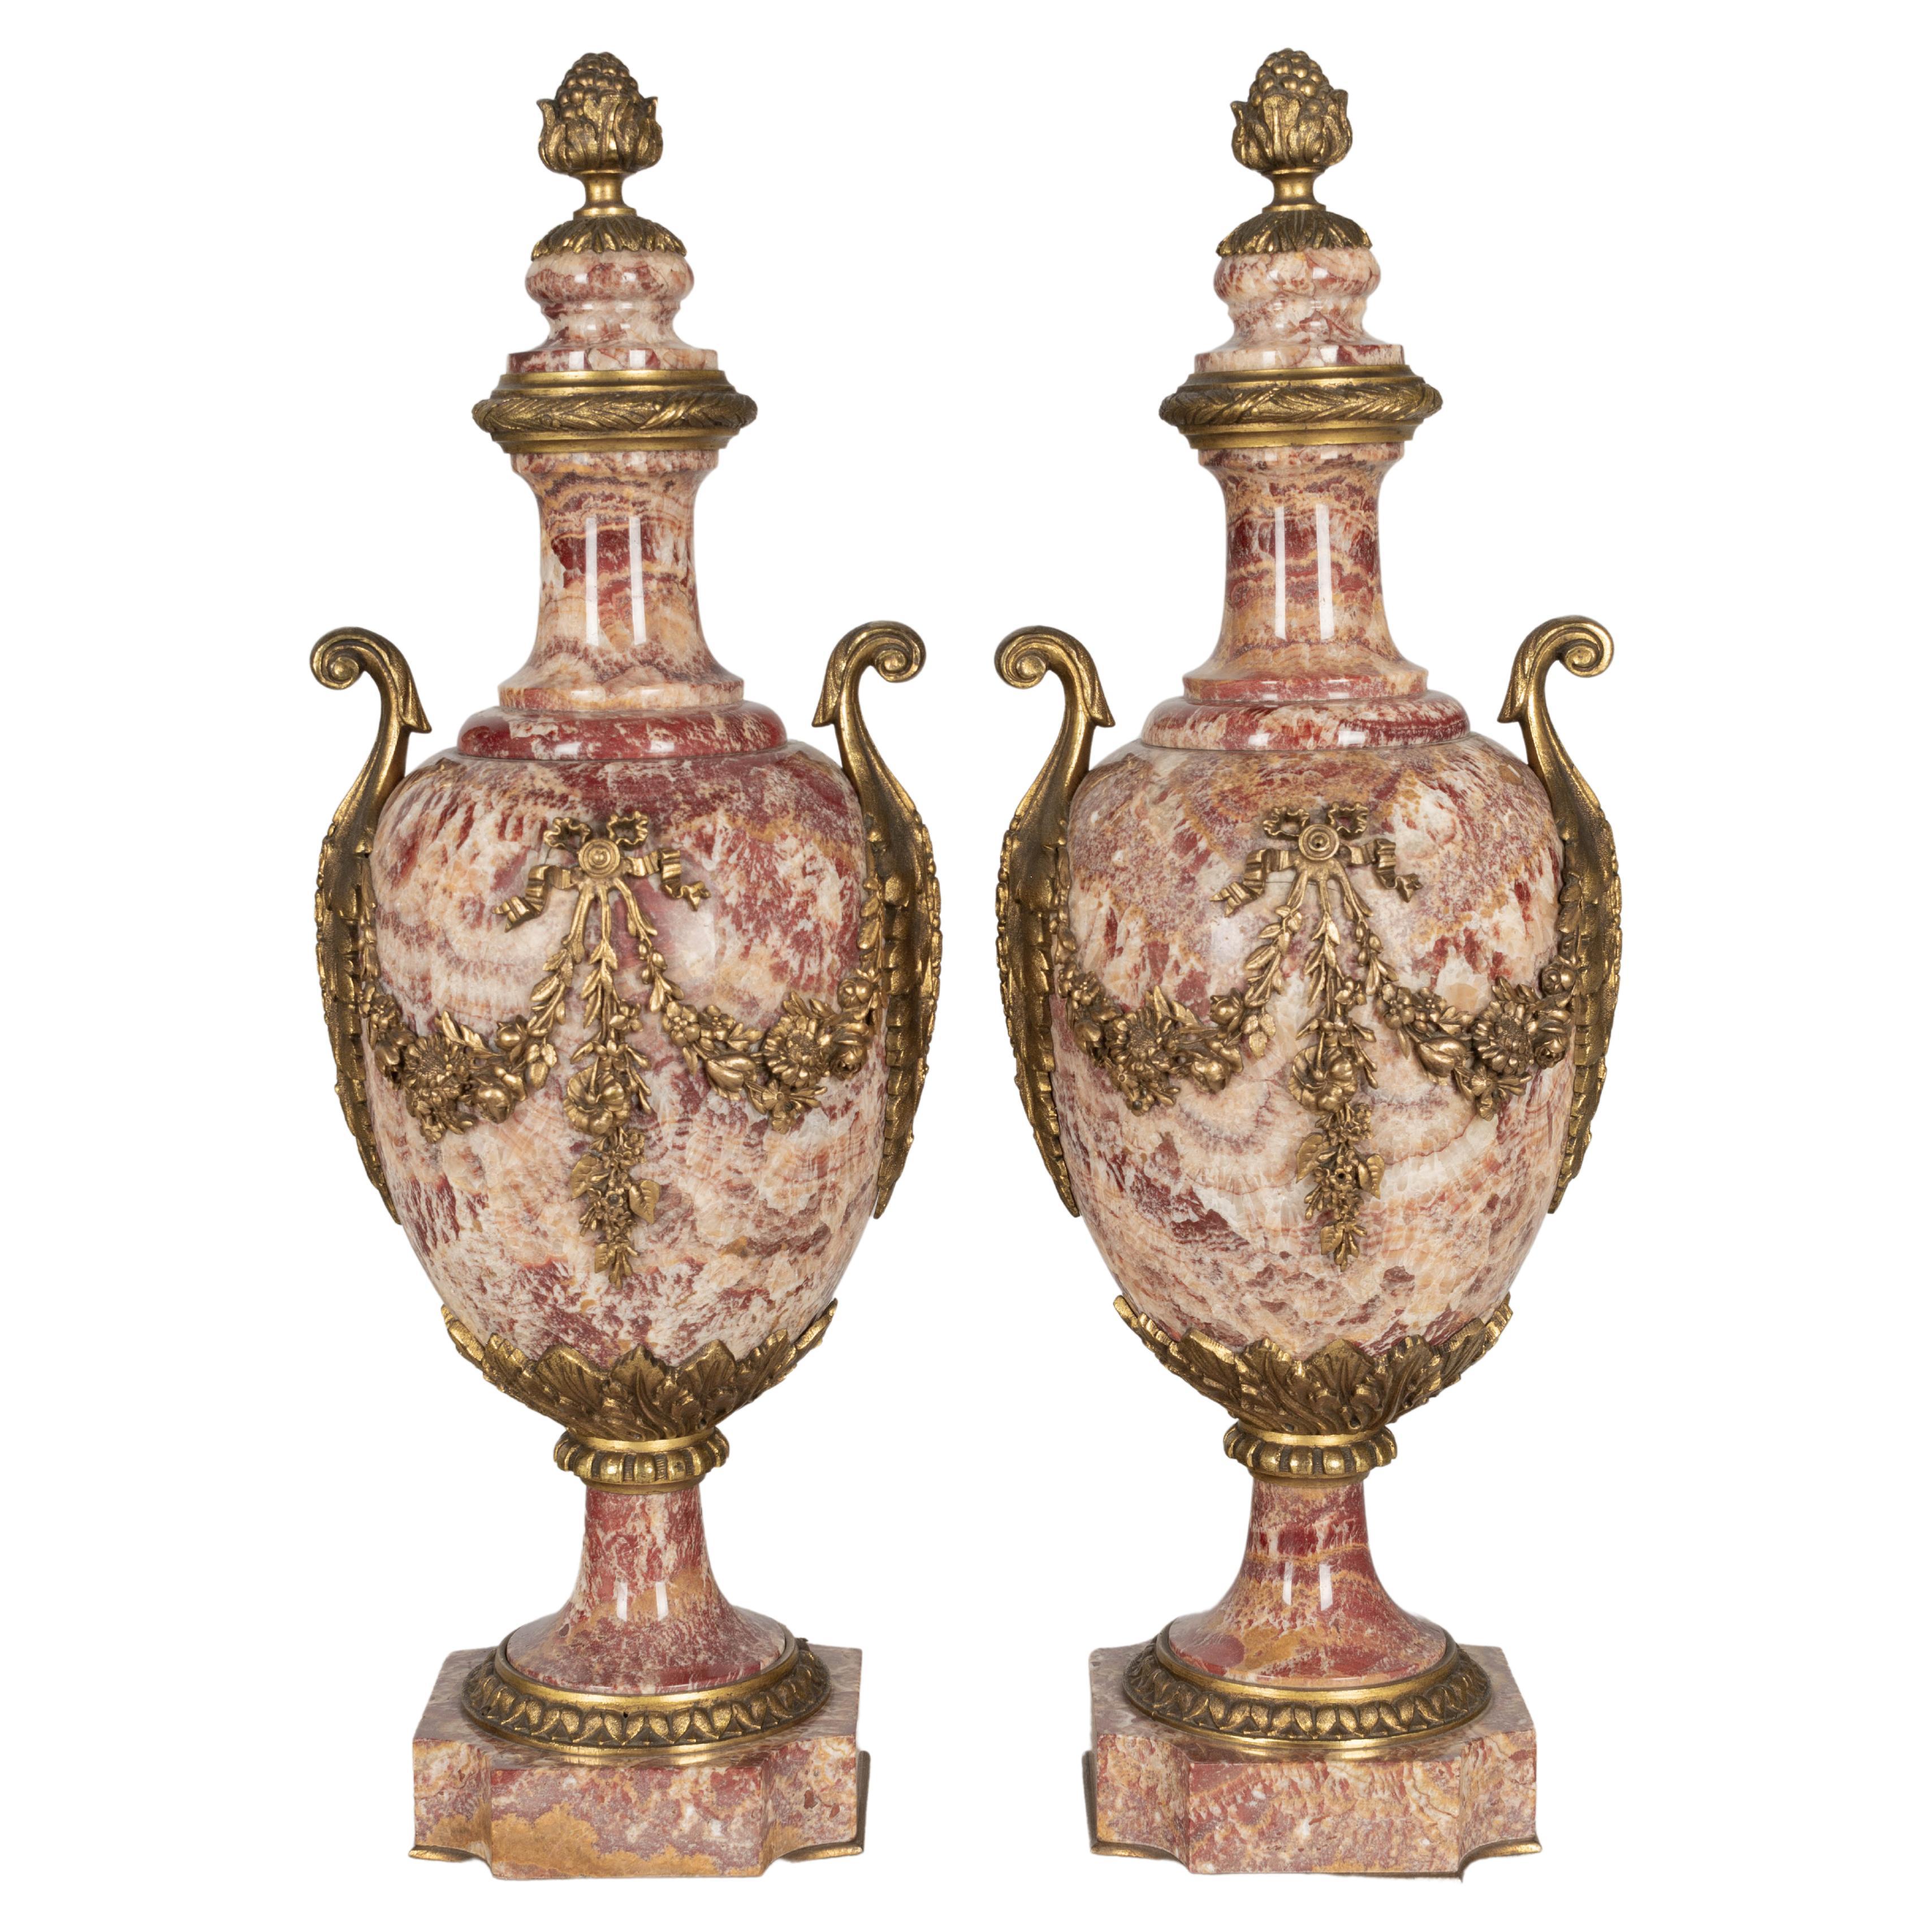 Paire d'urnes Cassolette françaises en marbre et bronze du 19ème siècle